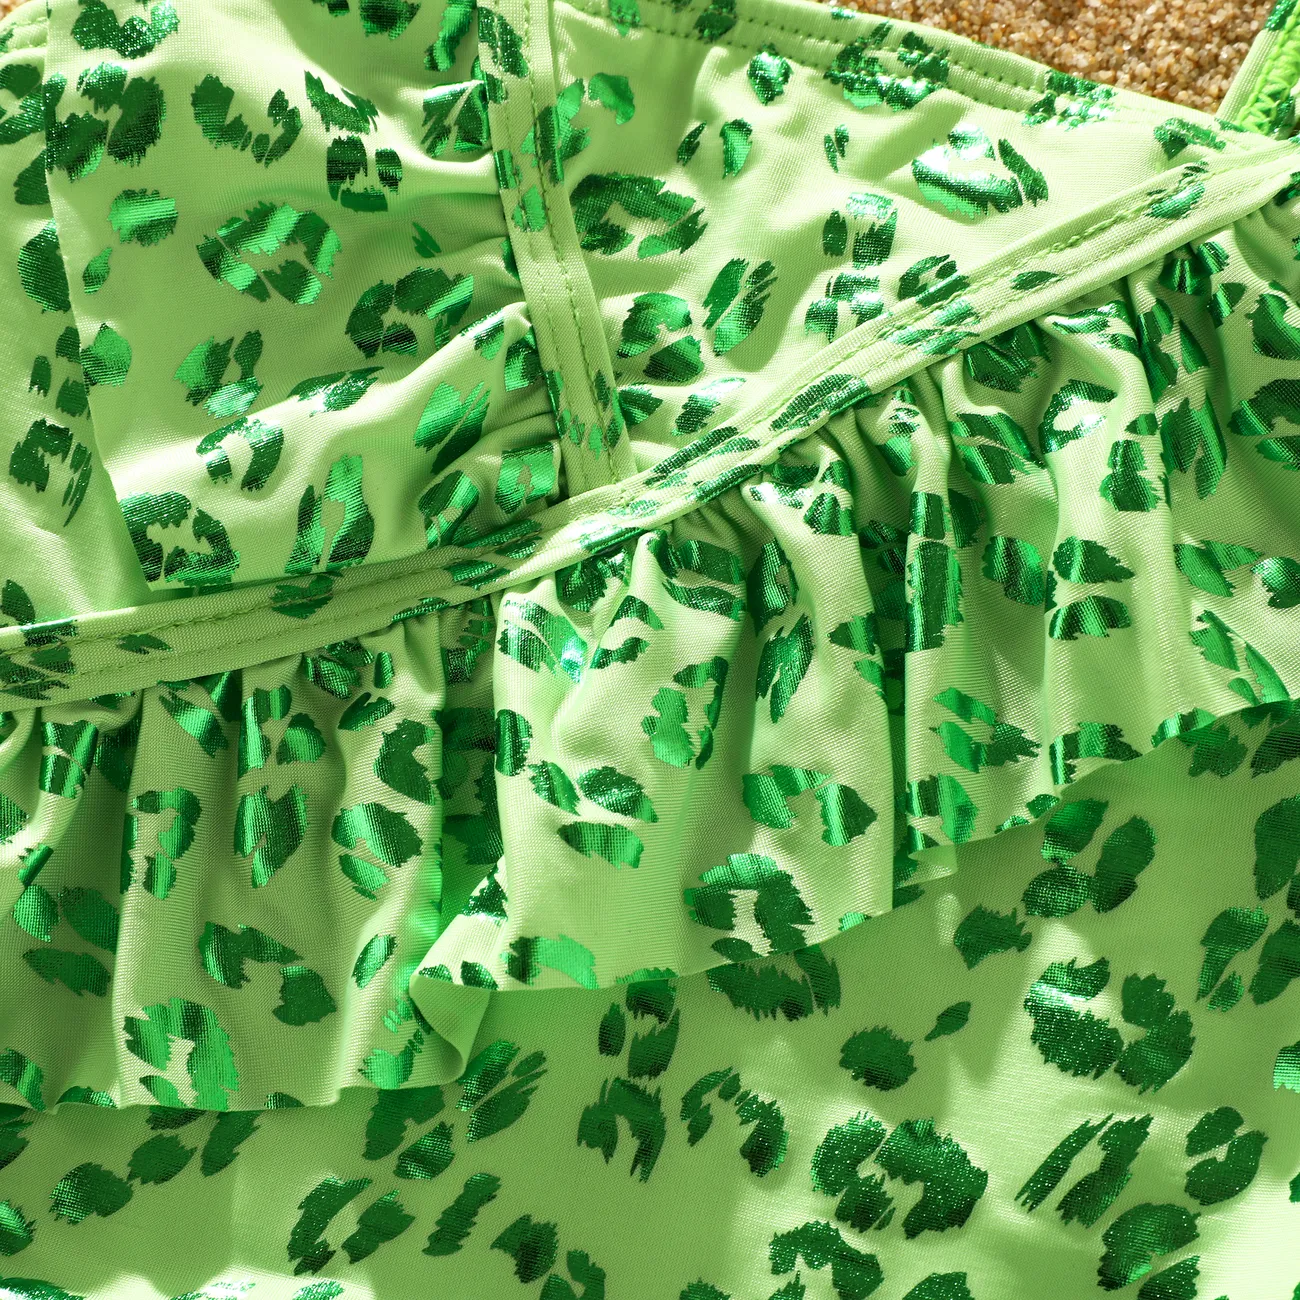 嬰兒 女 荷葉邊 豹紋 前衛 無袖 泳衣 綠色 big image 1